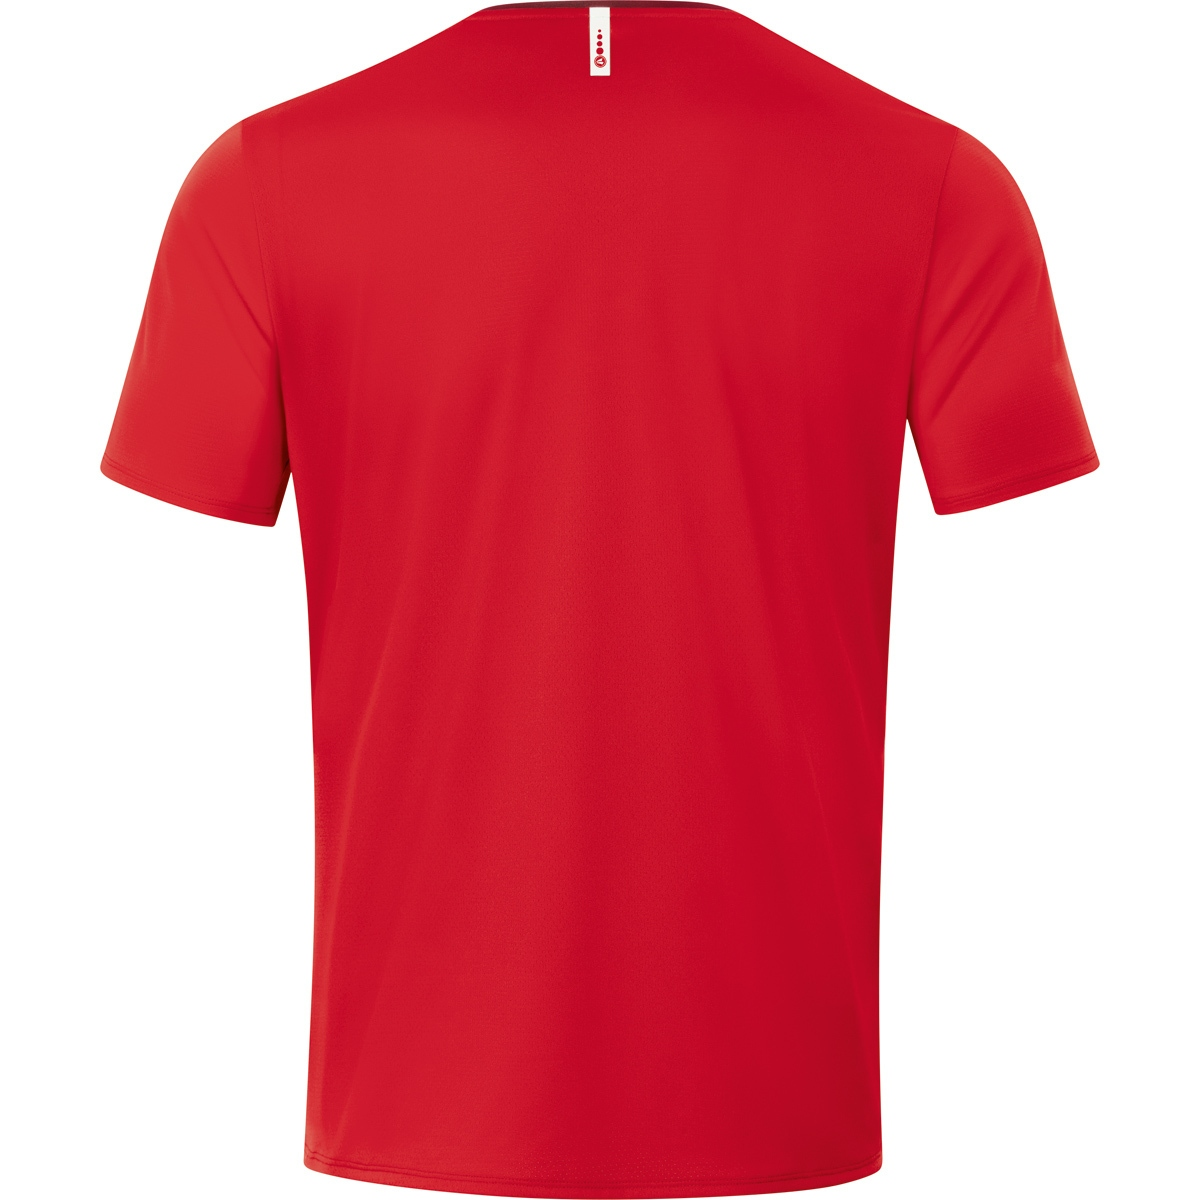 T-Shirt Kinder, rot/weinrot, 2.0 Gr. JAKO 6120 Champ 116,